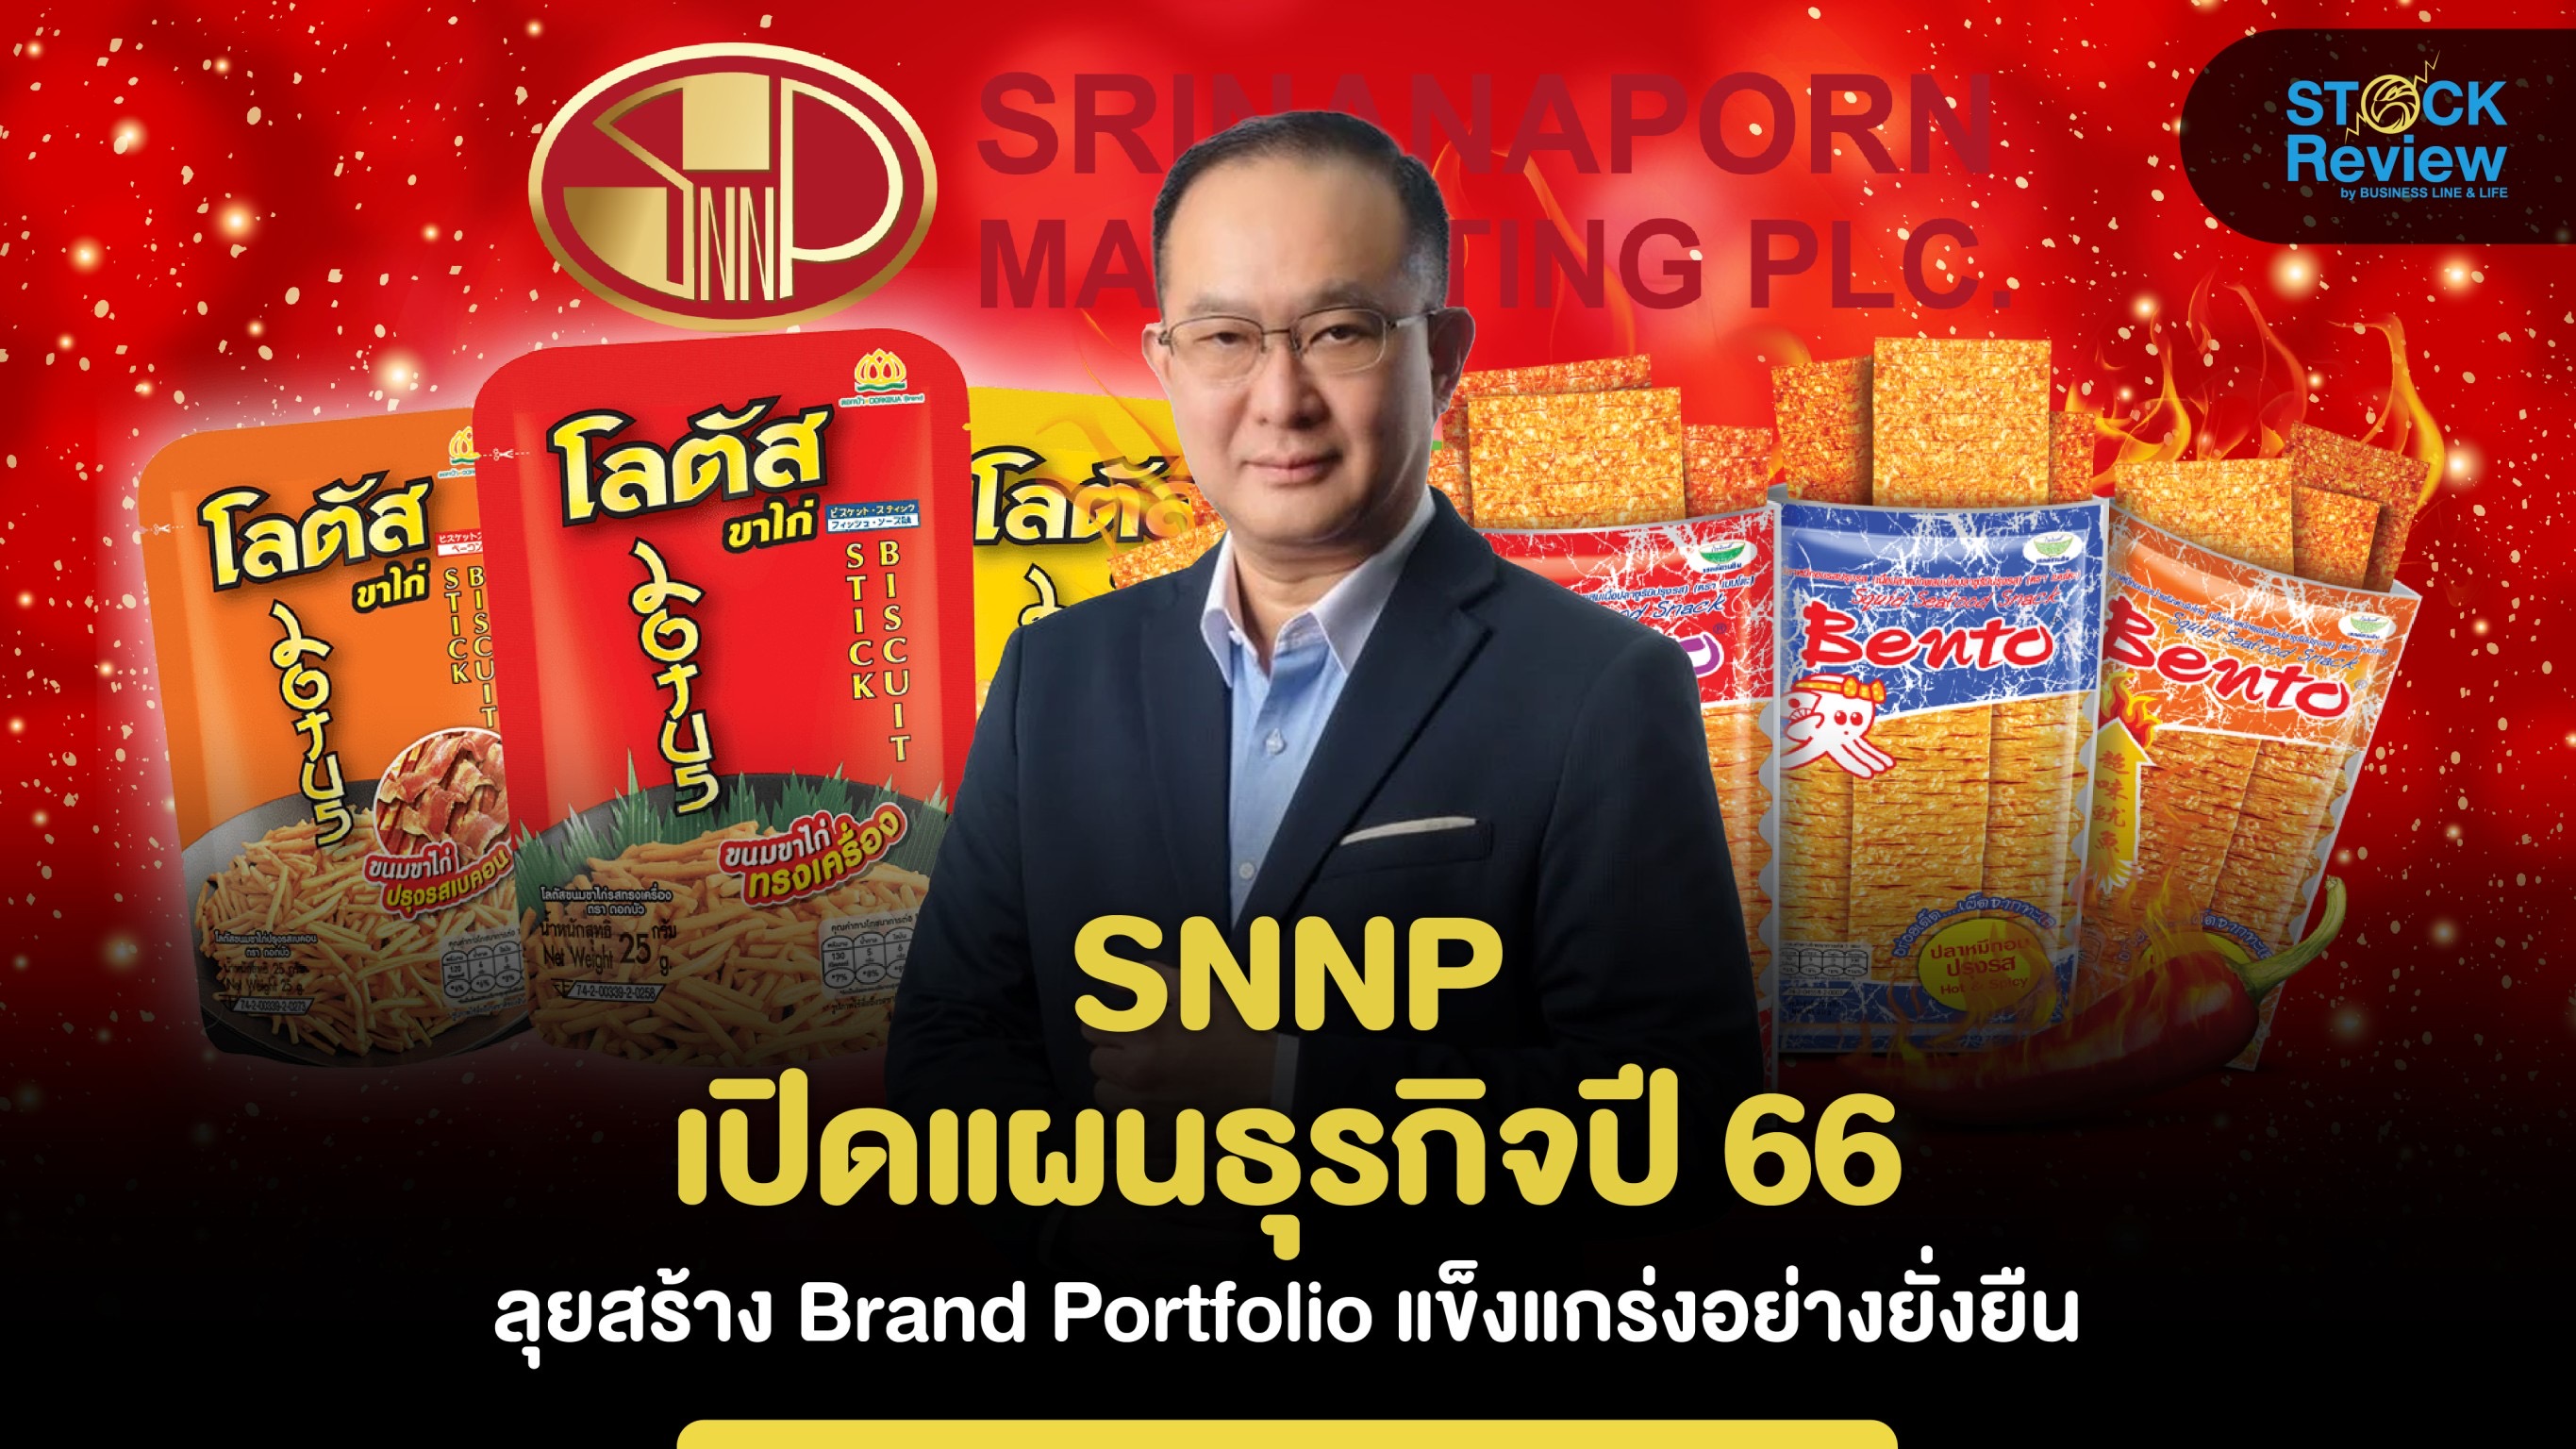 SNNP เปิดแผนธุรกิจปี 66 ลุยสร้าง Brand Portfolio แข็งแกร่งอย่างยั่งยืน